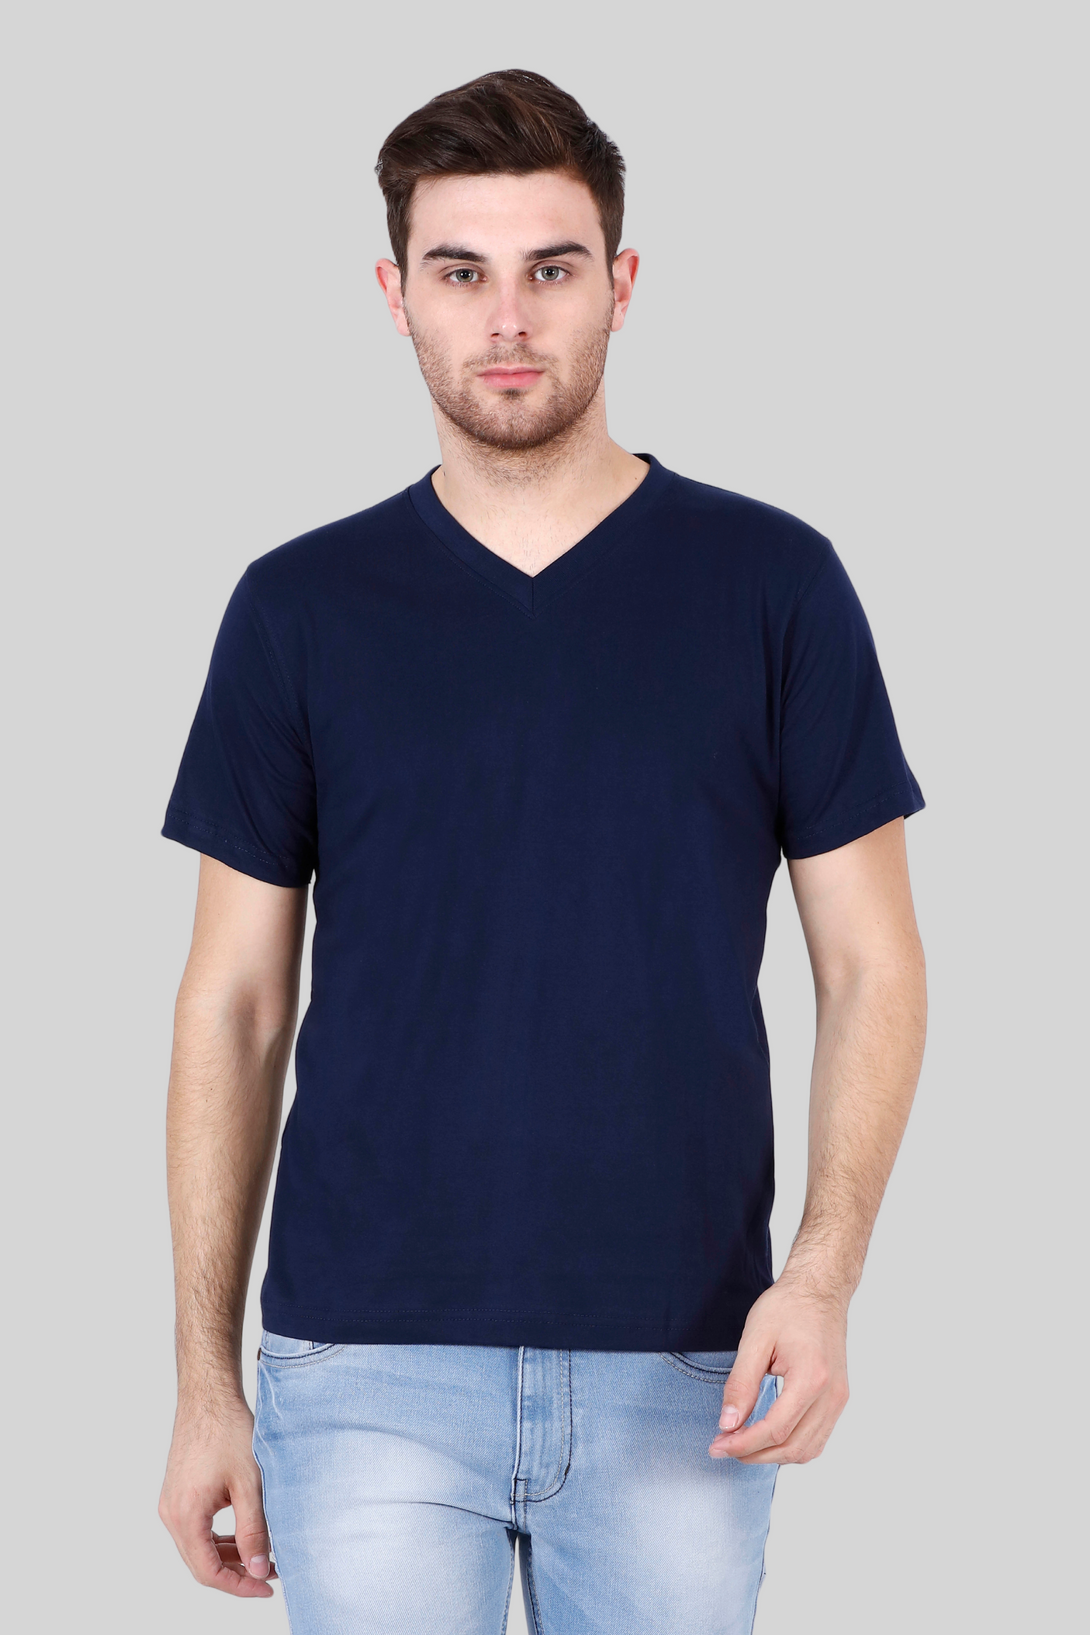 Navy Blue V Neck T-Shirt For Men - WowWaves - 1